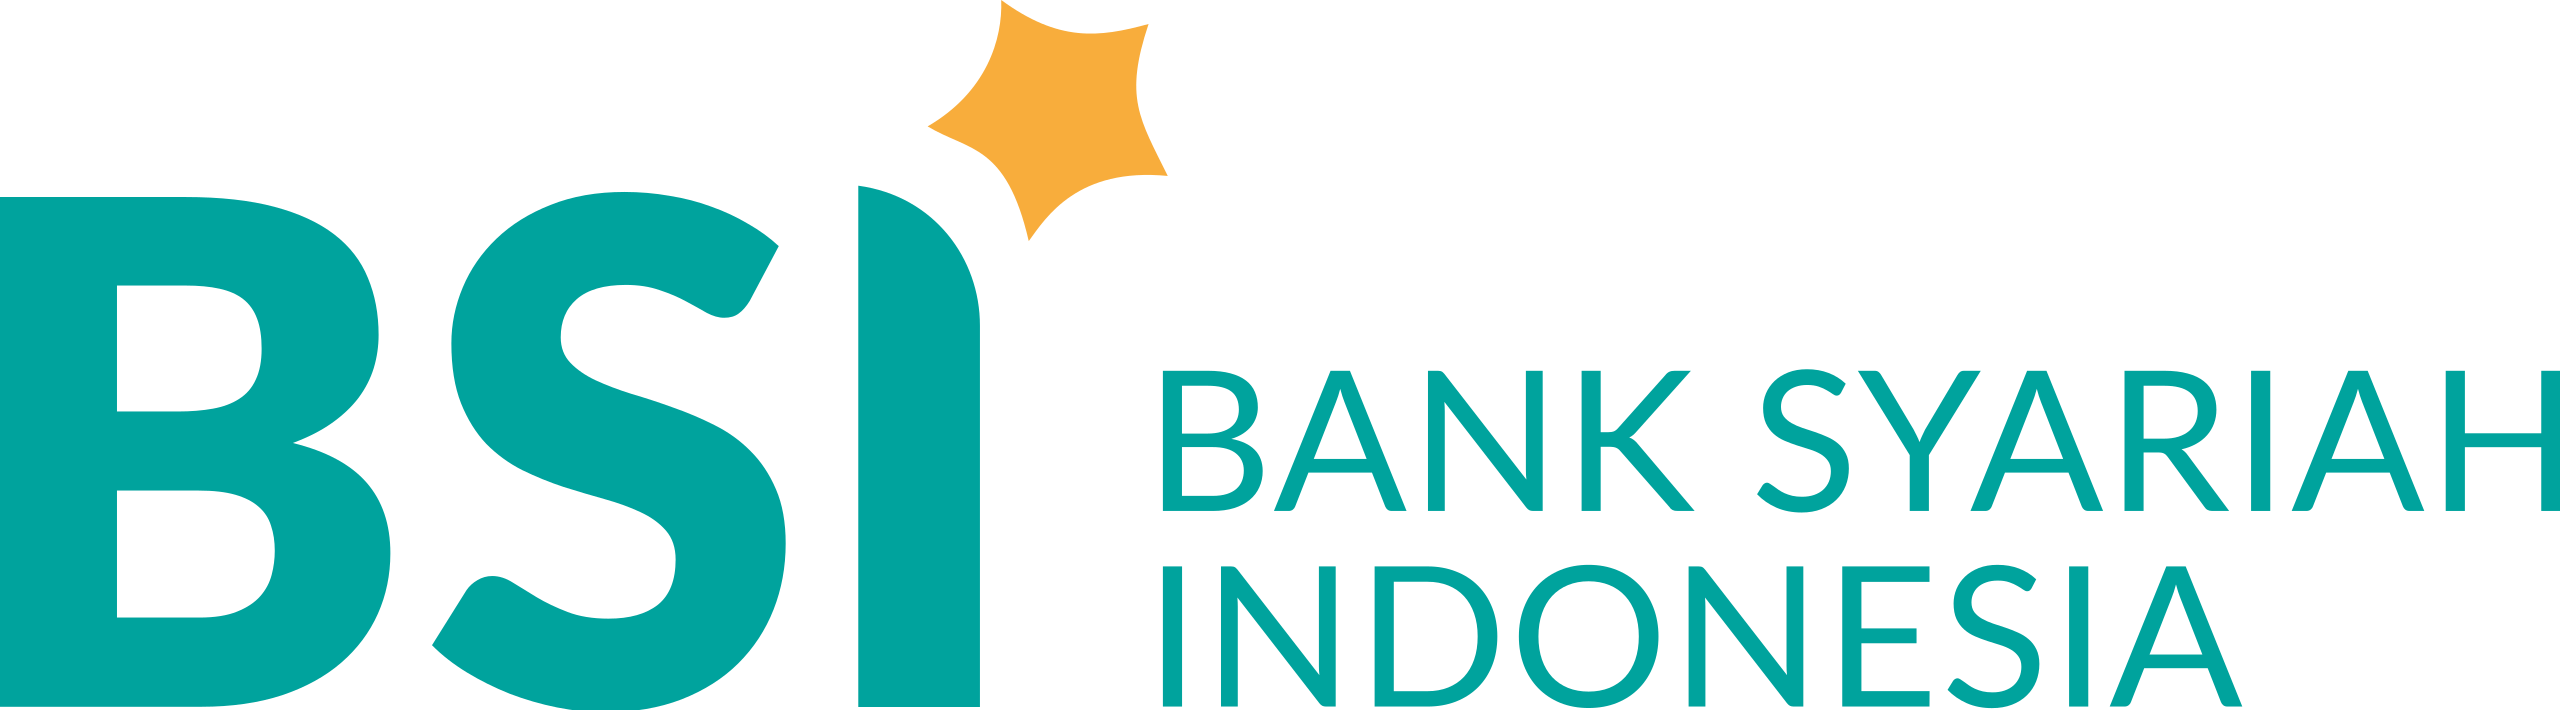 Bank_Syariah_Indonesia.svg_-1-1.png